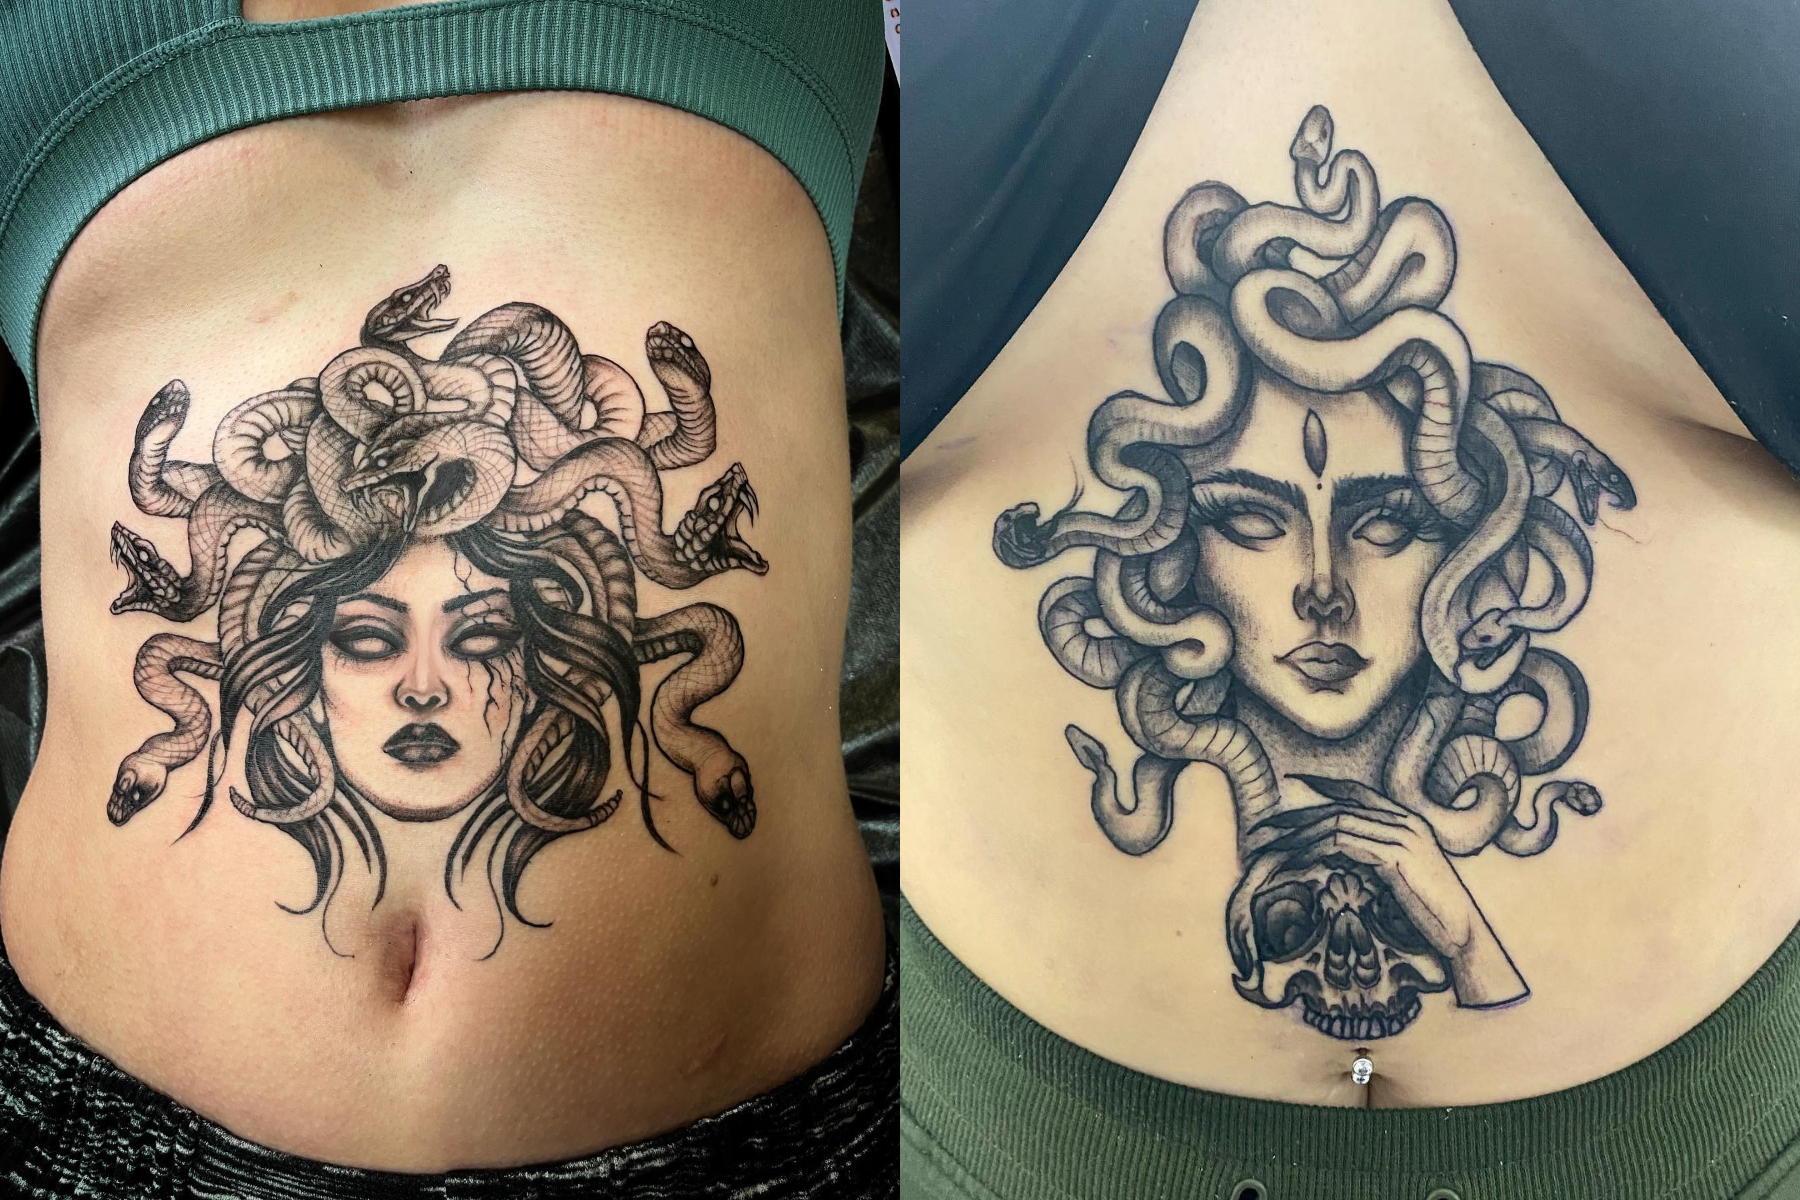 Ladies with black medusa tattoos